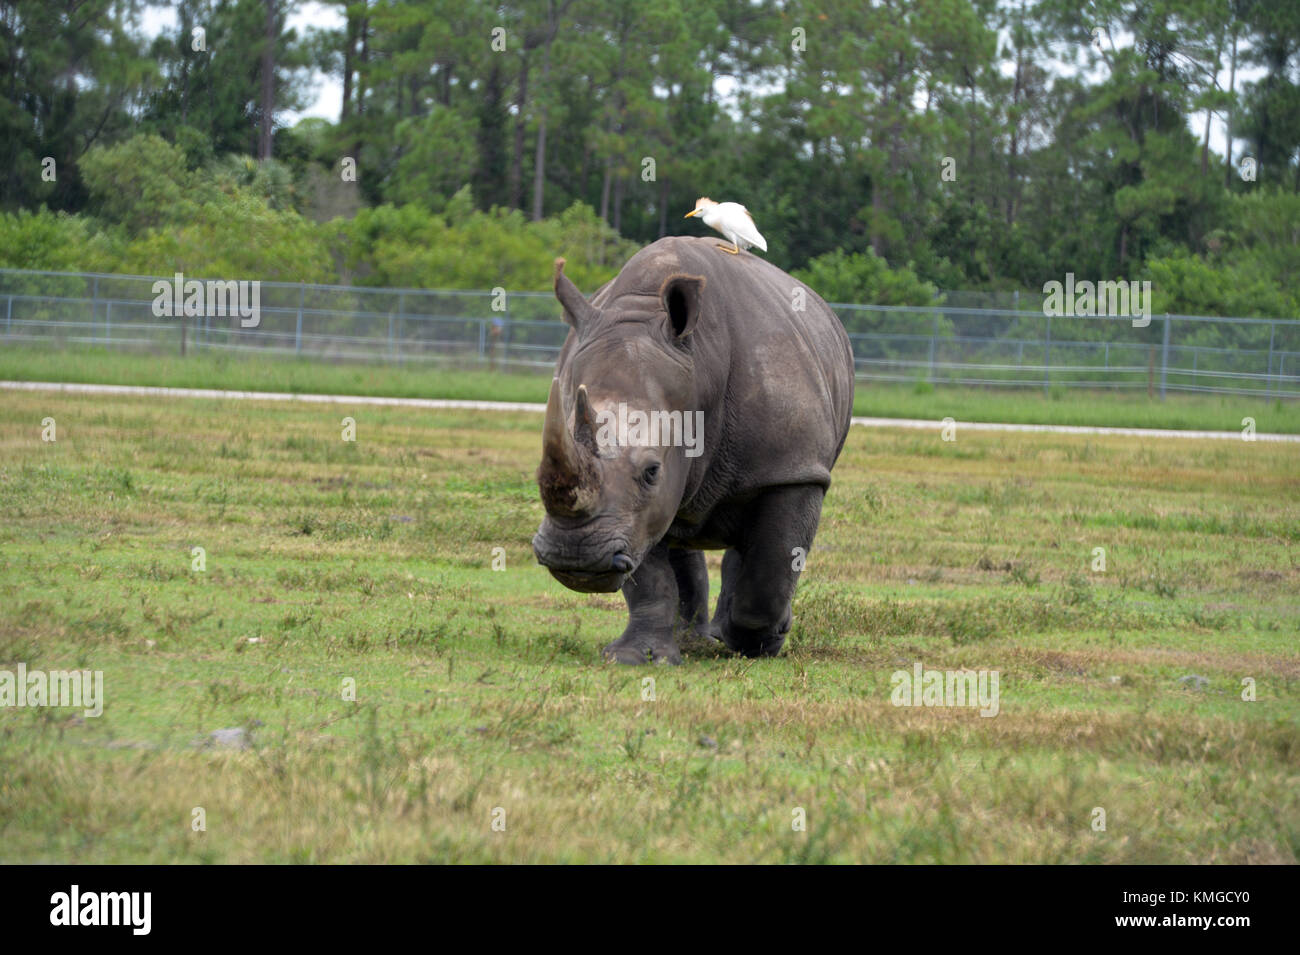 Loxahatchee, FL - 17 AOÛT : rhinocéros au Lion Country Safari le 17 août 2015 à Loxahatchee, en Floride. Personnes: Rhinoceros transmission Ref: FLXX Hoo-Me.com / MediaPunch Banque D'Images